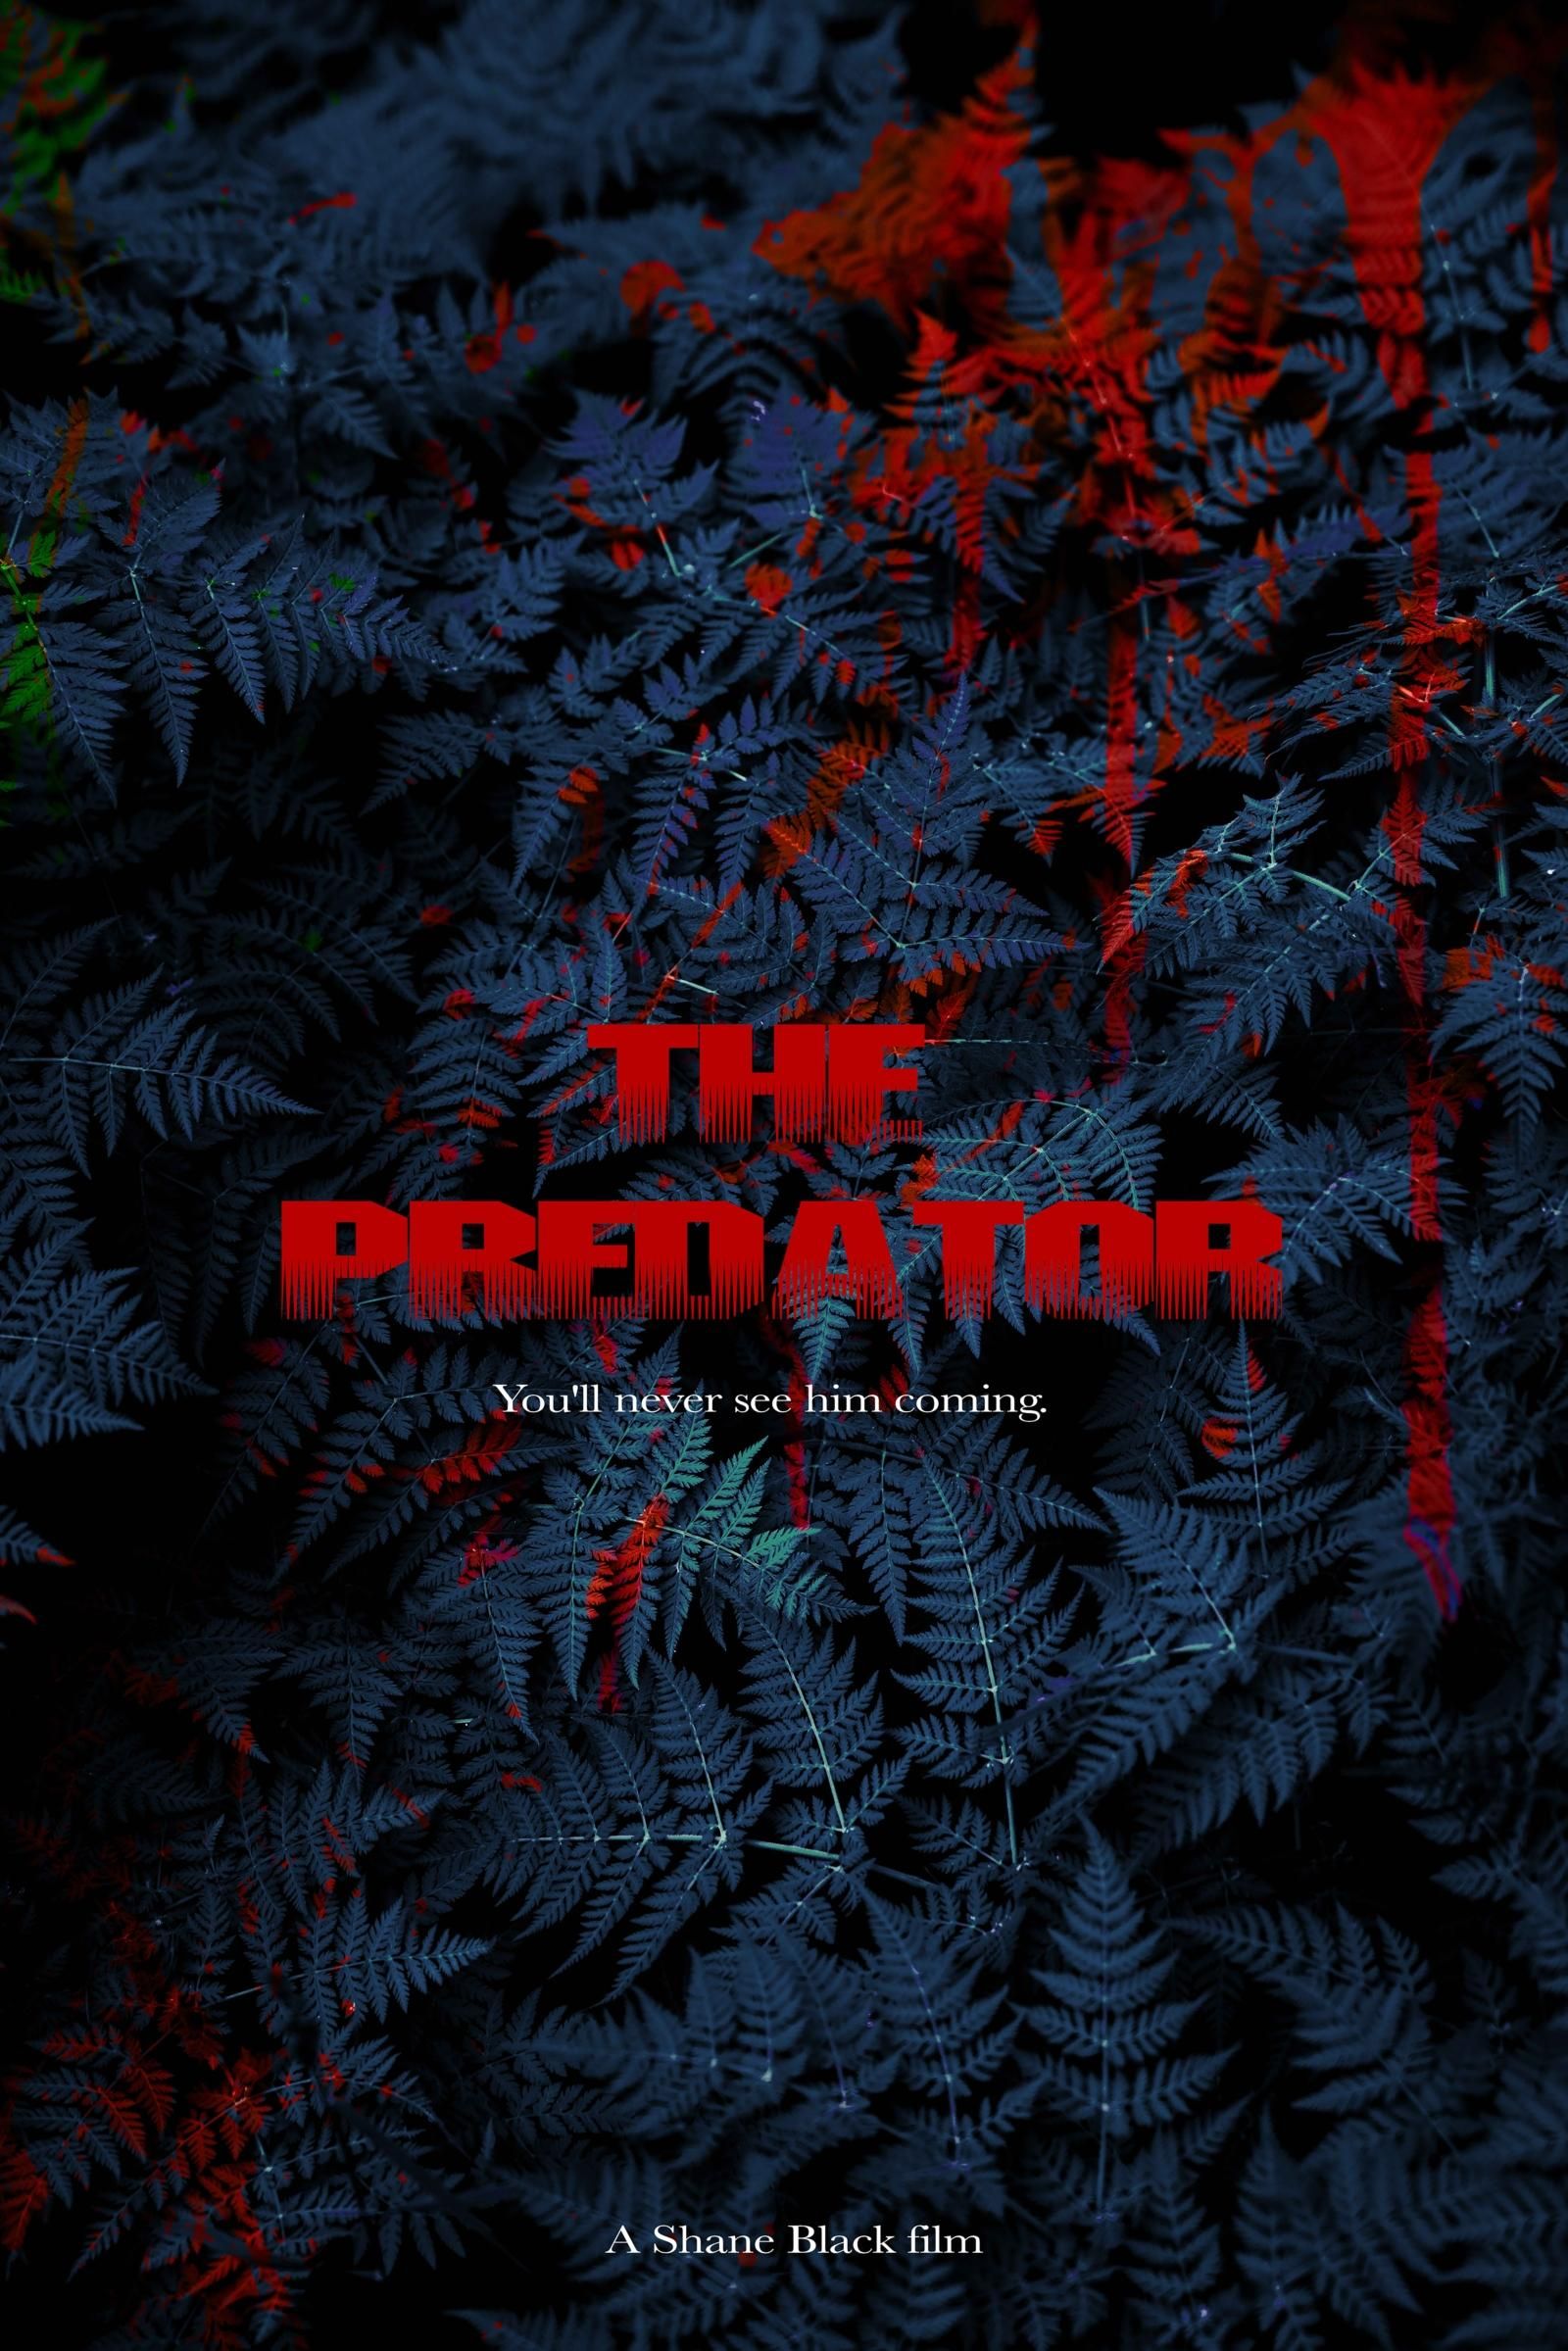 The Predator 2018 Skull Poster Wallpapers